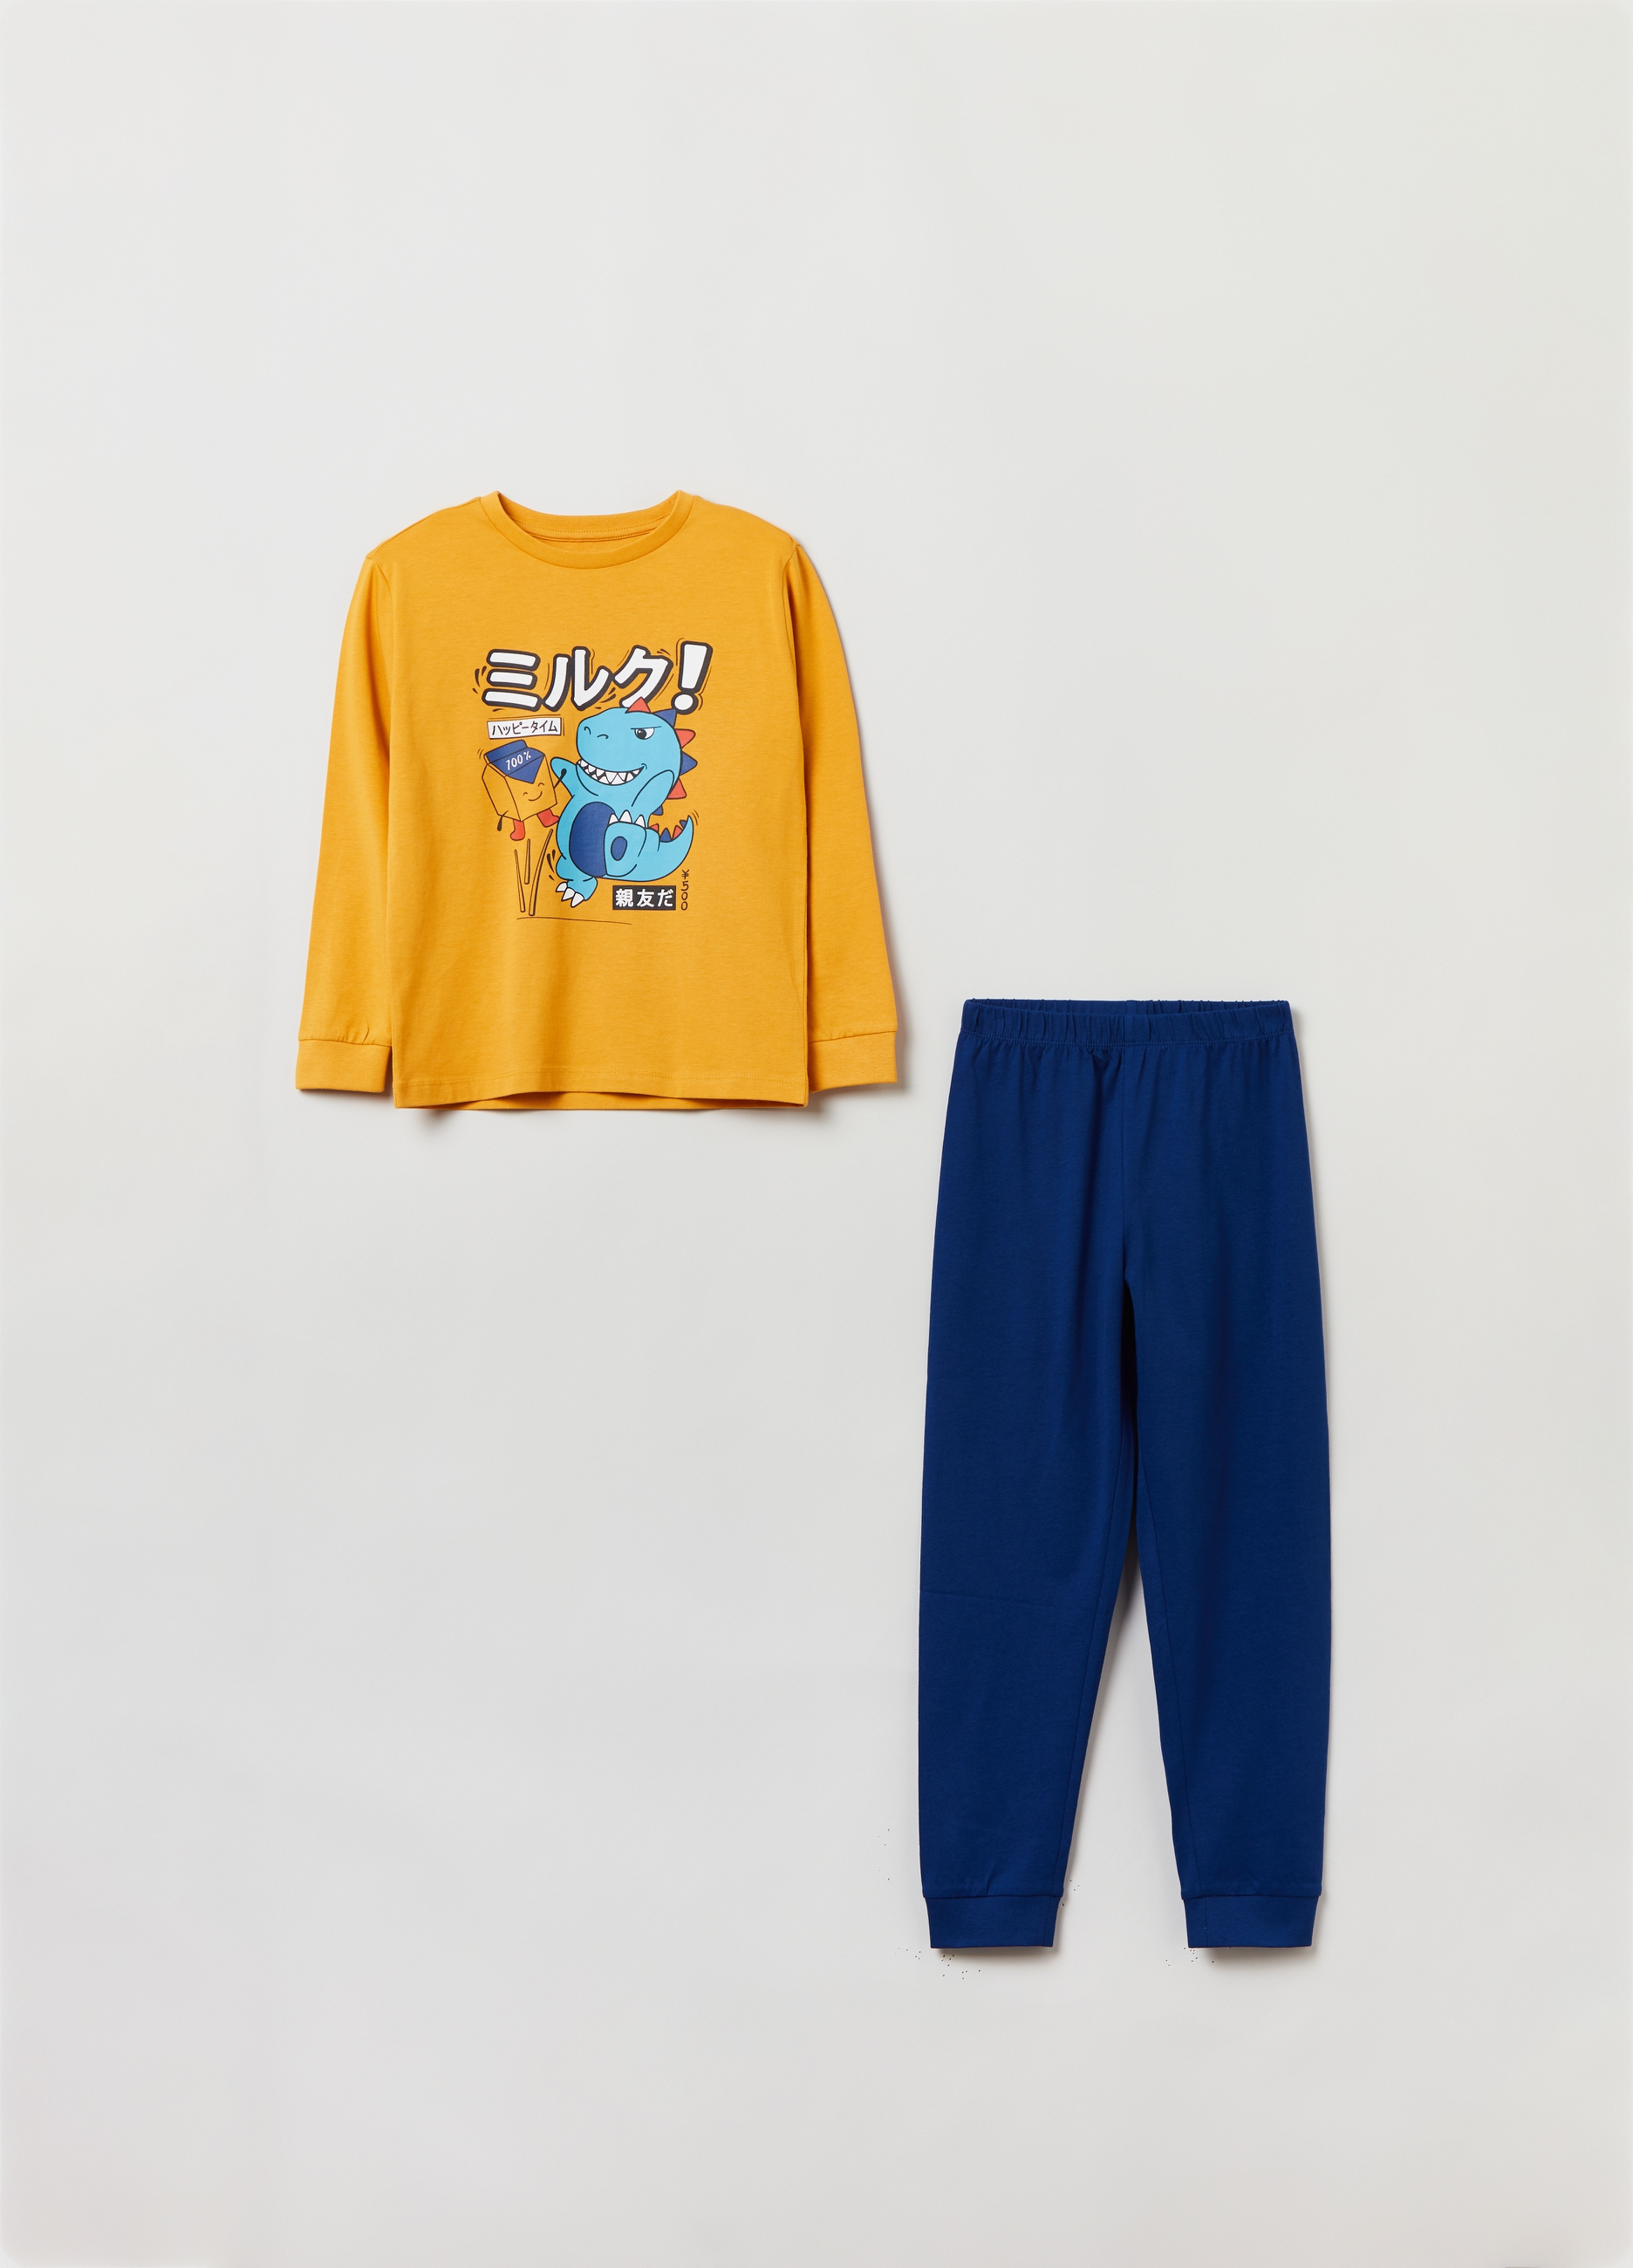 Пижама OVS для мальчиков, желтая, 7-8 лет, 1825641